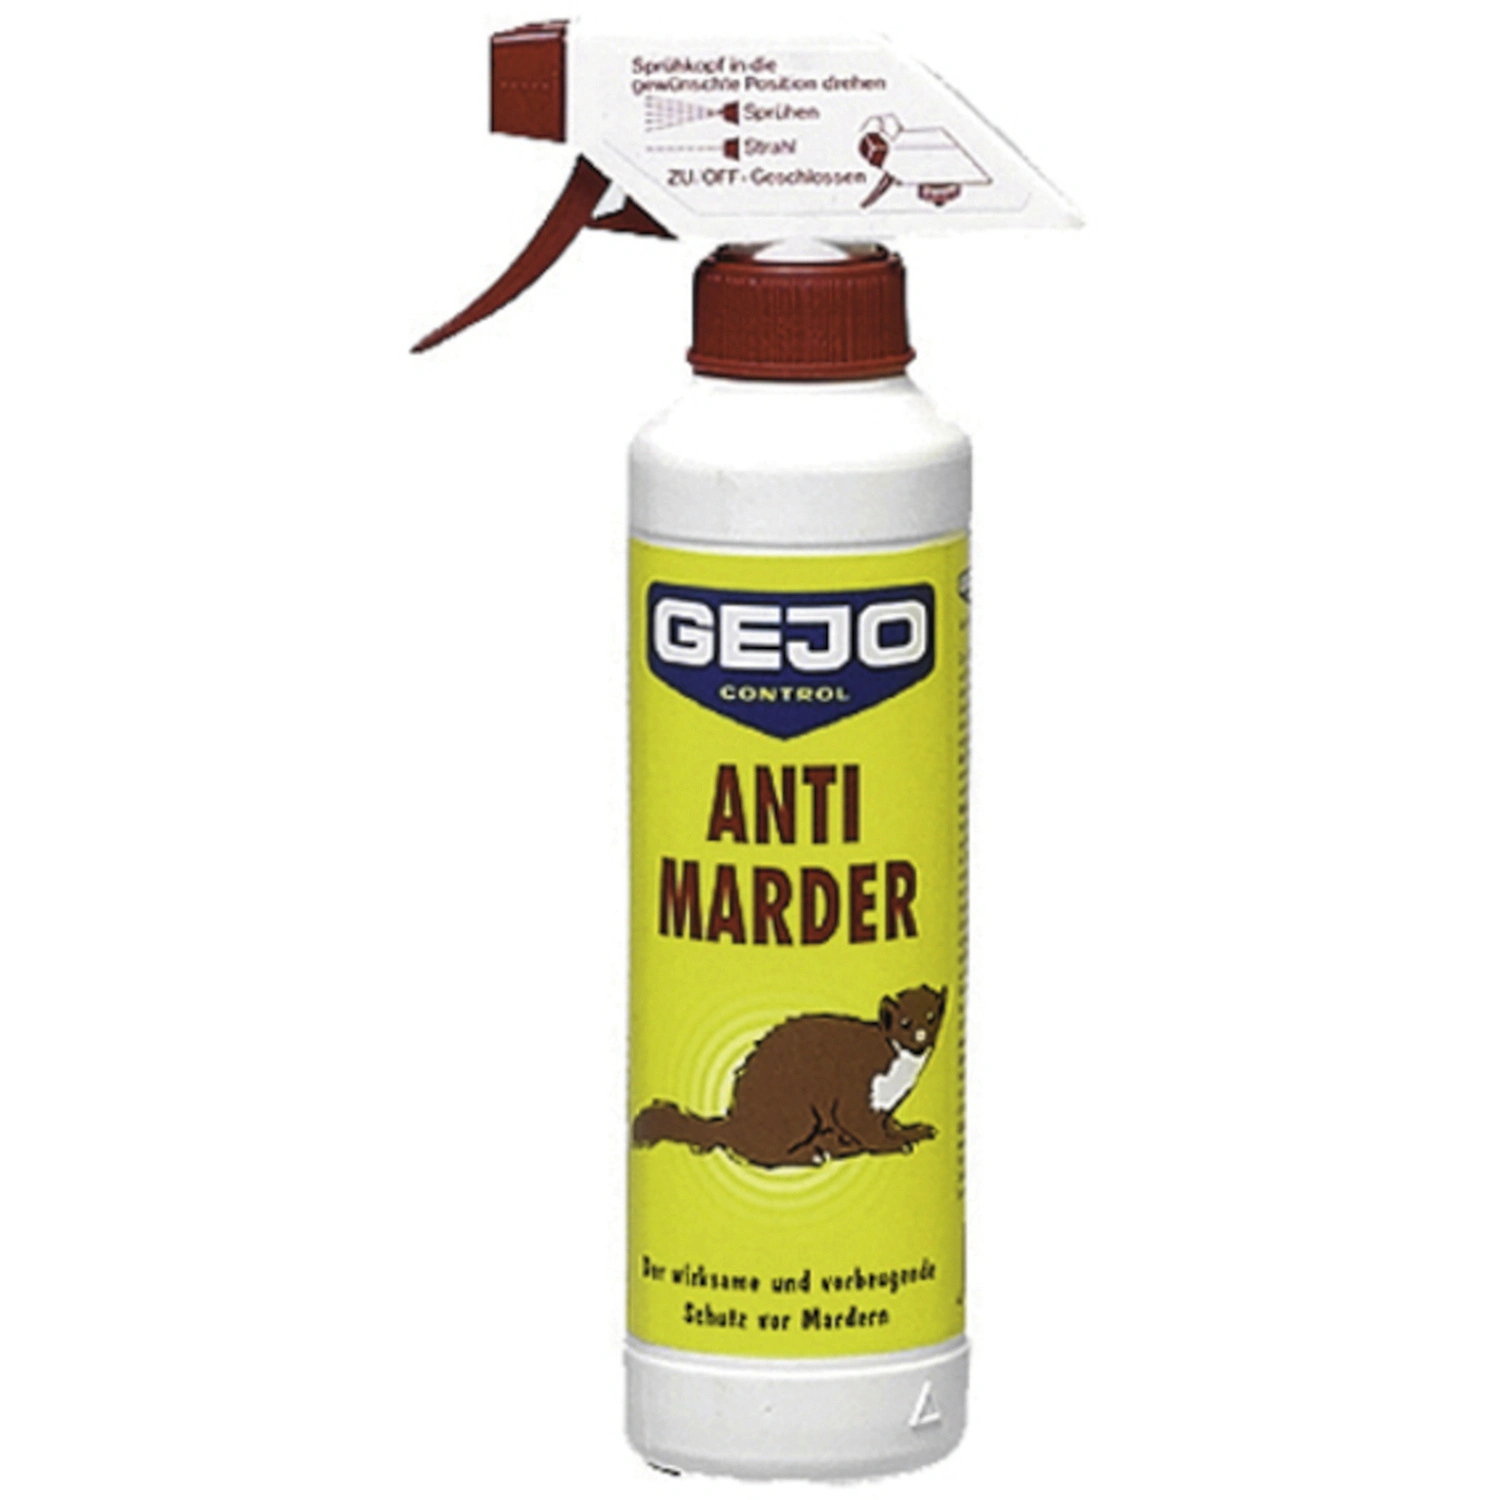 Cit Antimarder-Spray bekämpft Marder wirksam – Meinhof, 11,99 €